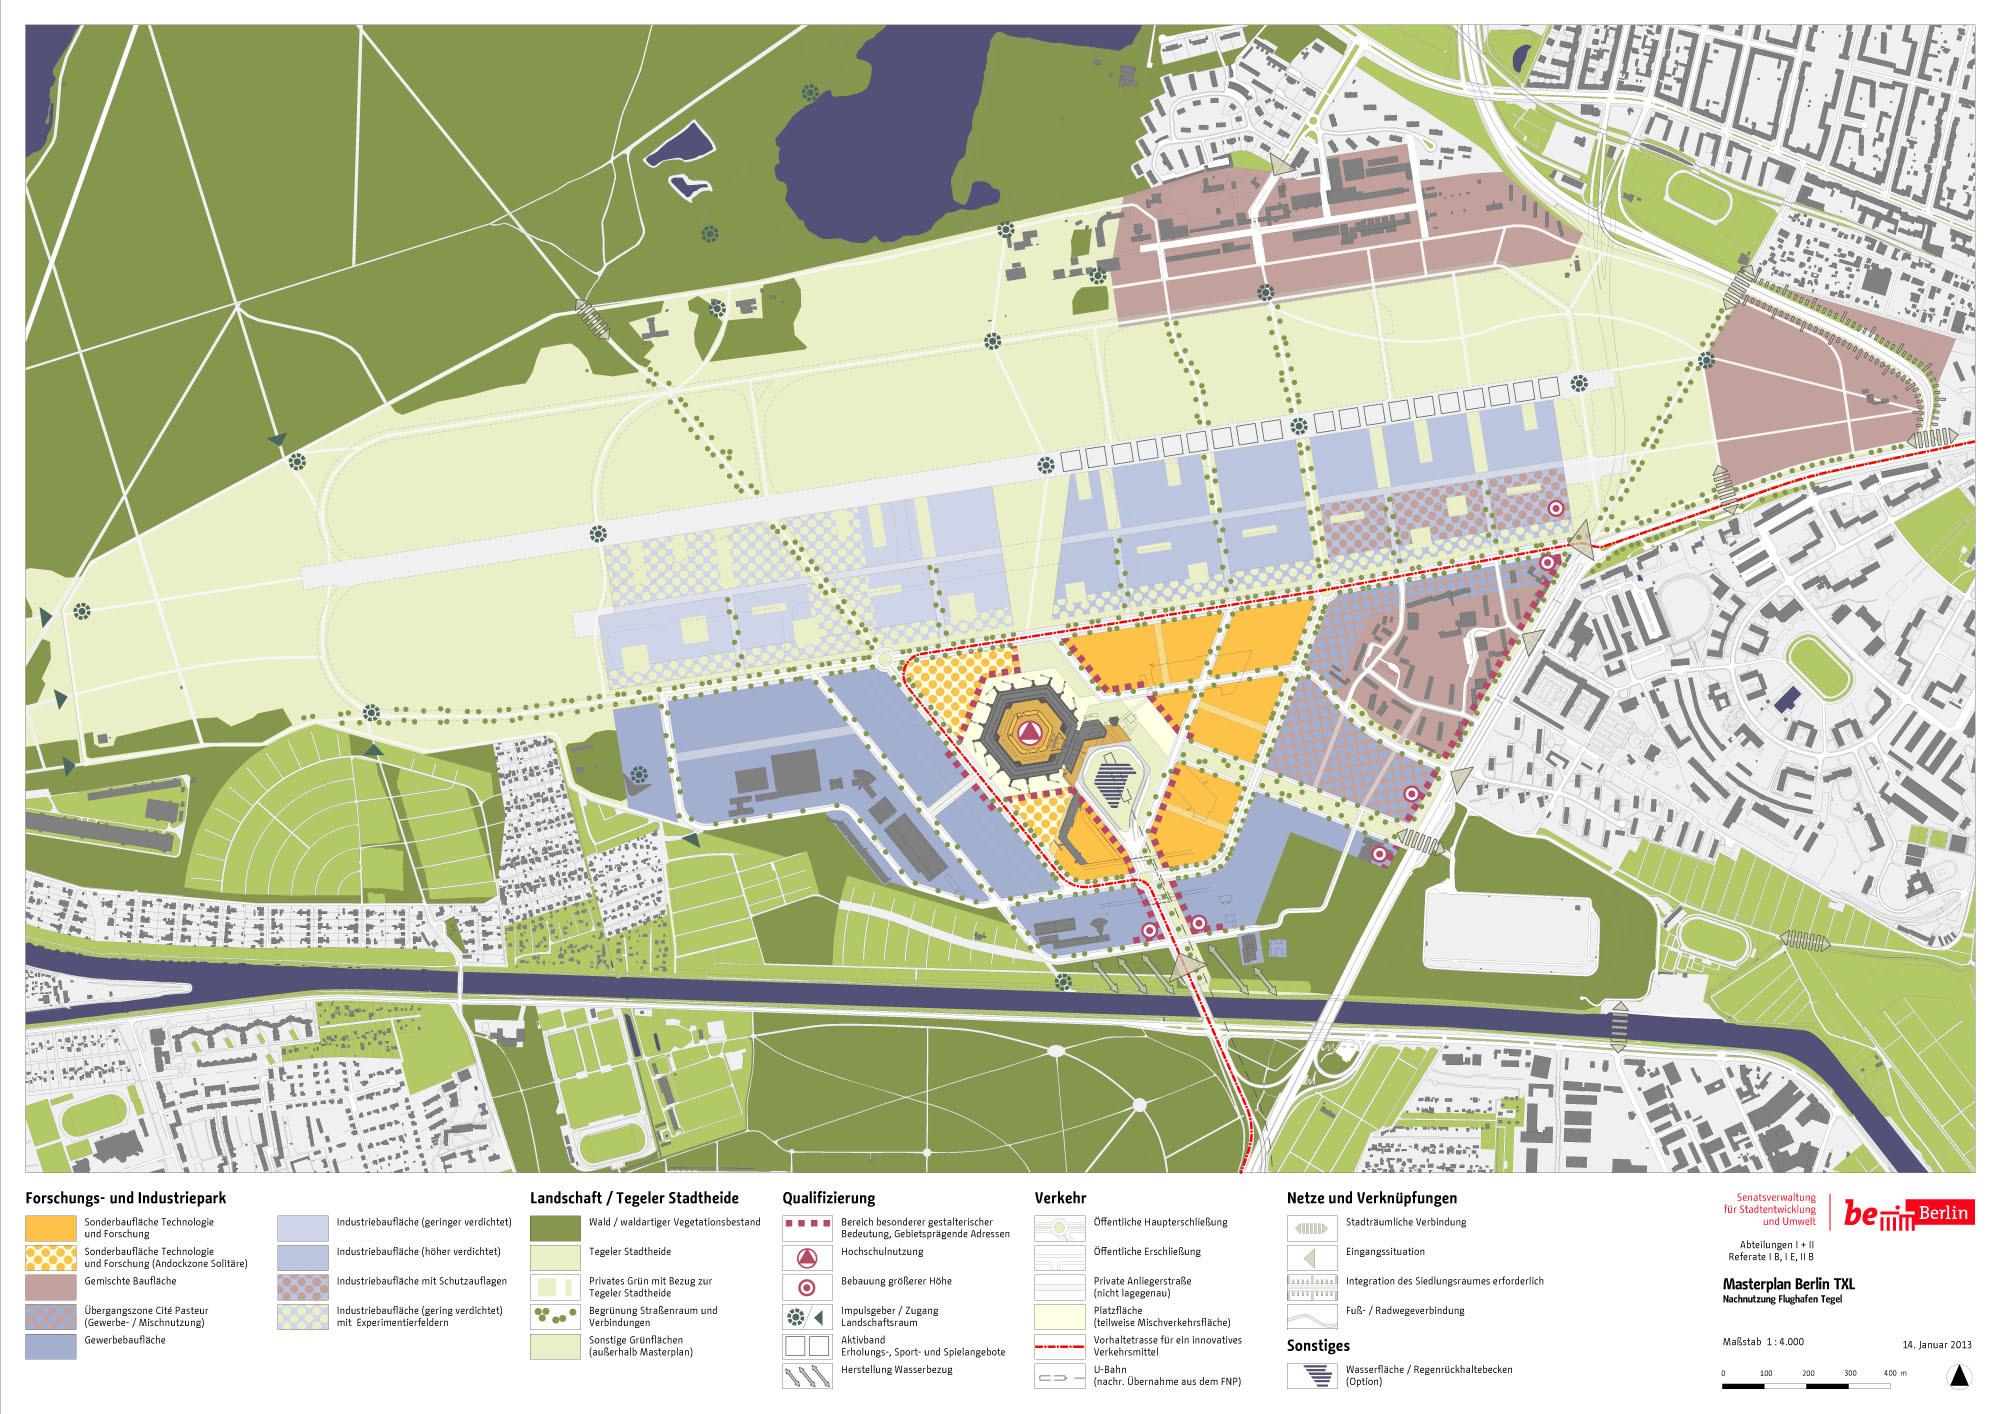 Masterplan für Flughafen Tegel verabschiedet / Next Stop: Urban